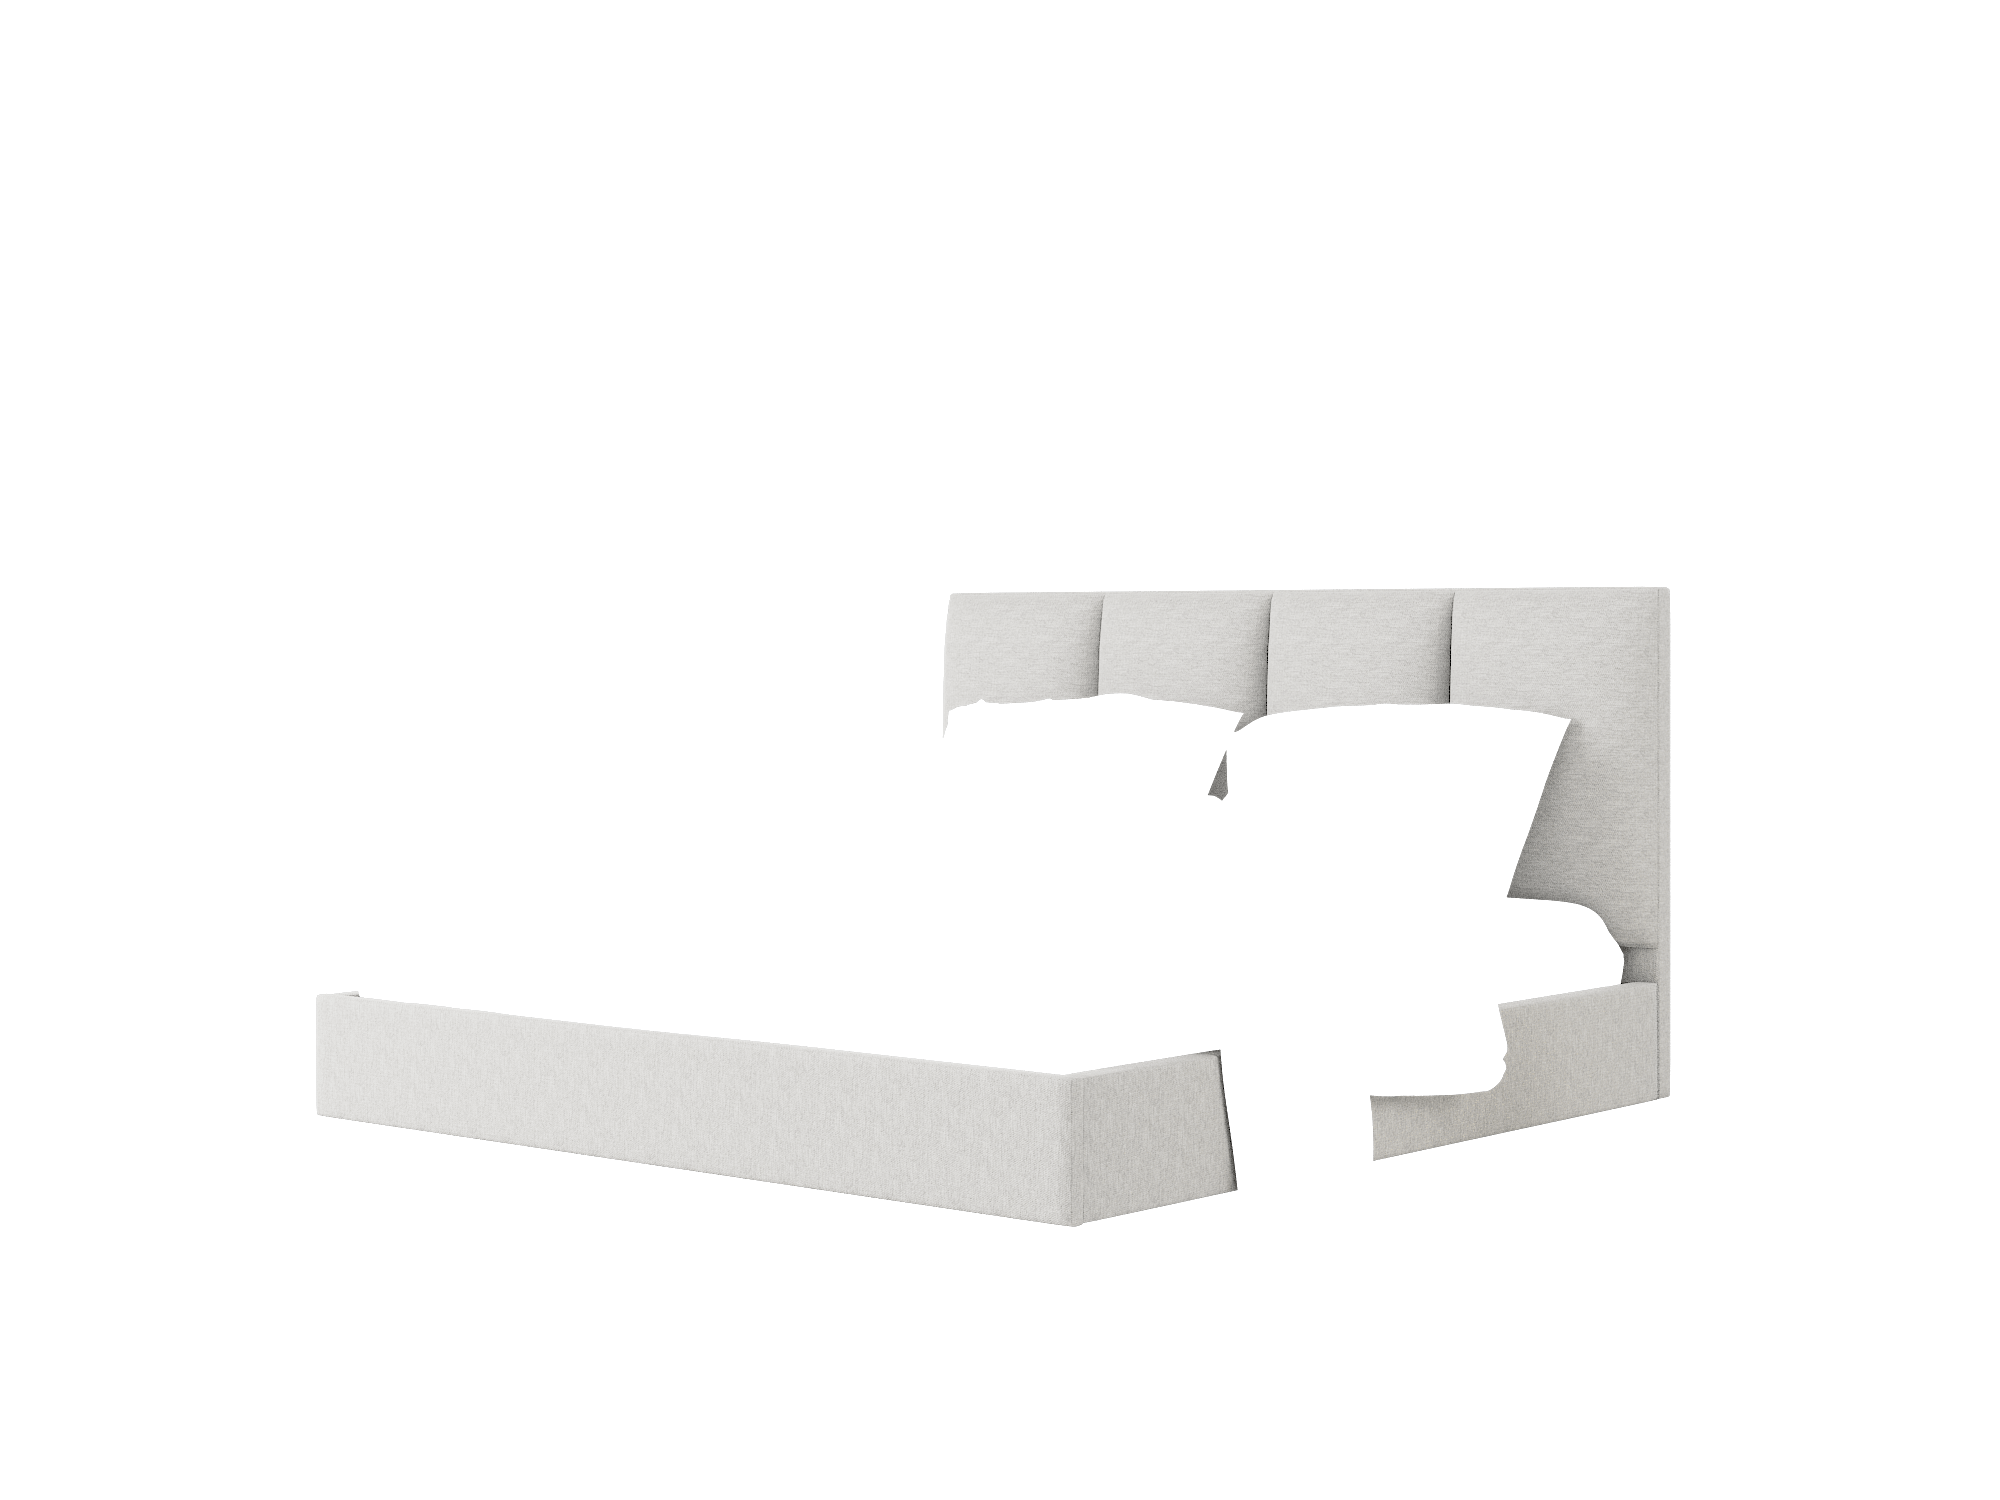 Celine Cosmo Steel Bed King Room Texture